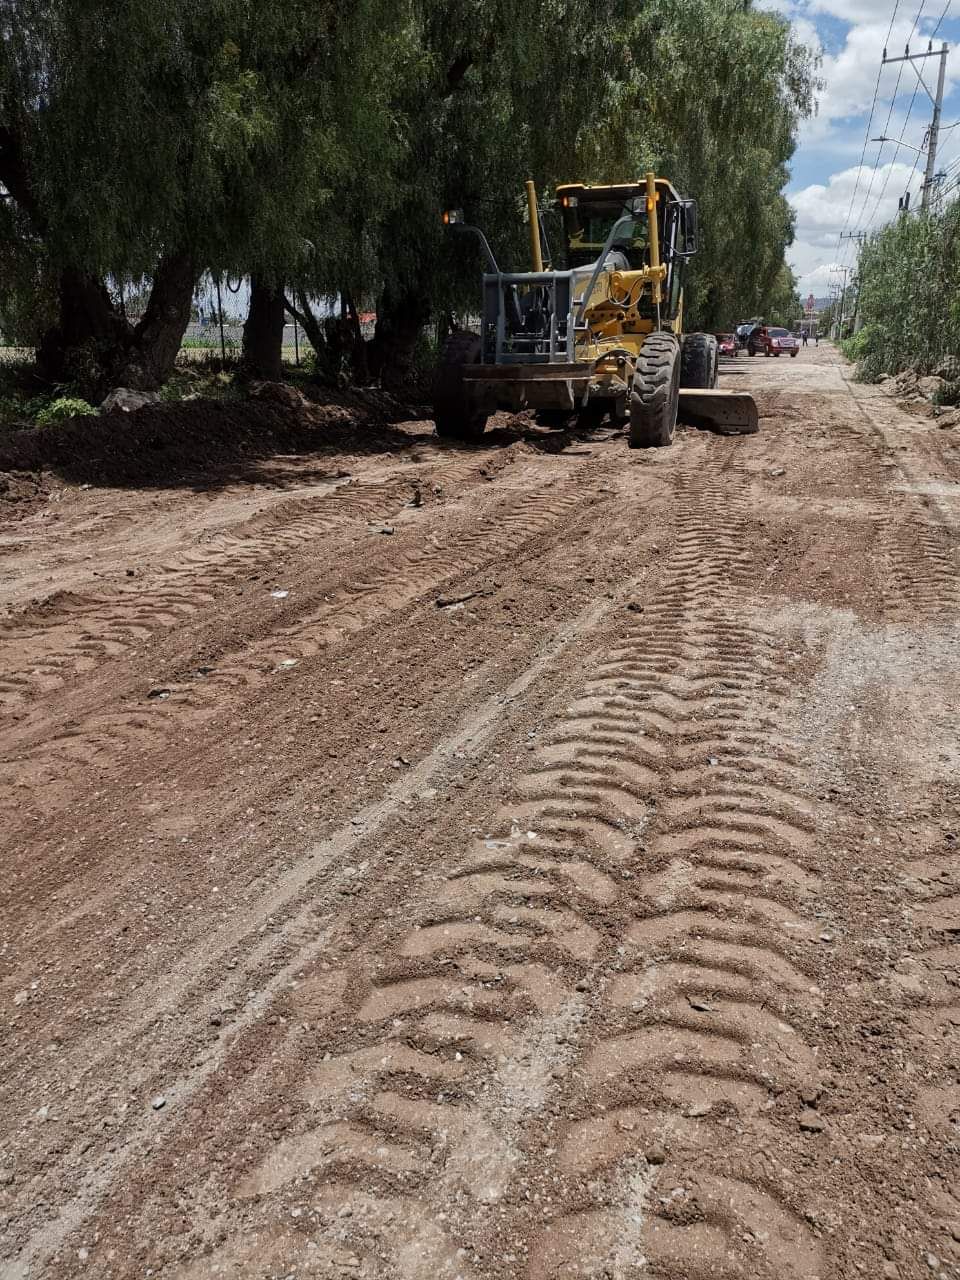 Servicios públicos empareja calles y apodan árboles en Tezoyuca 